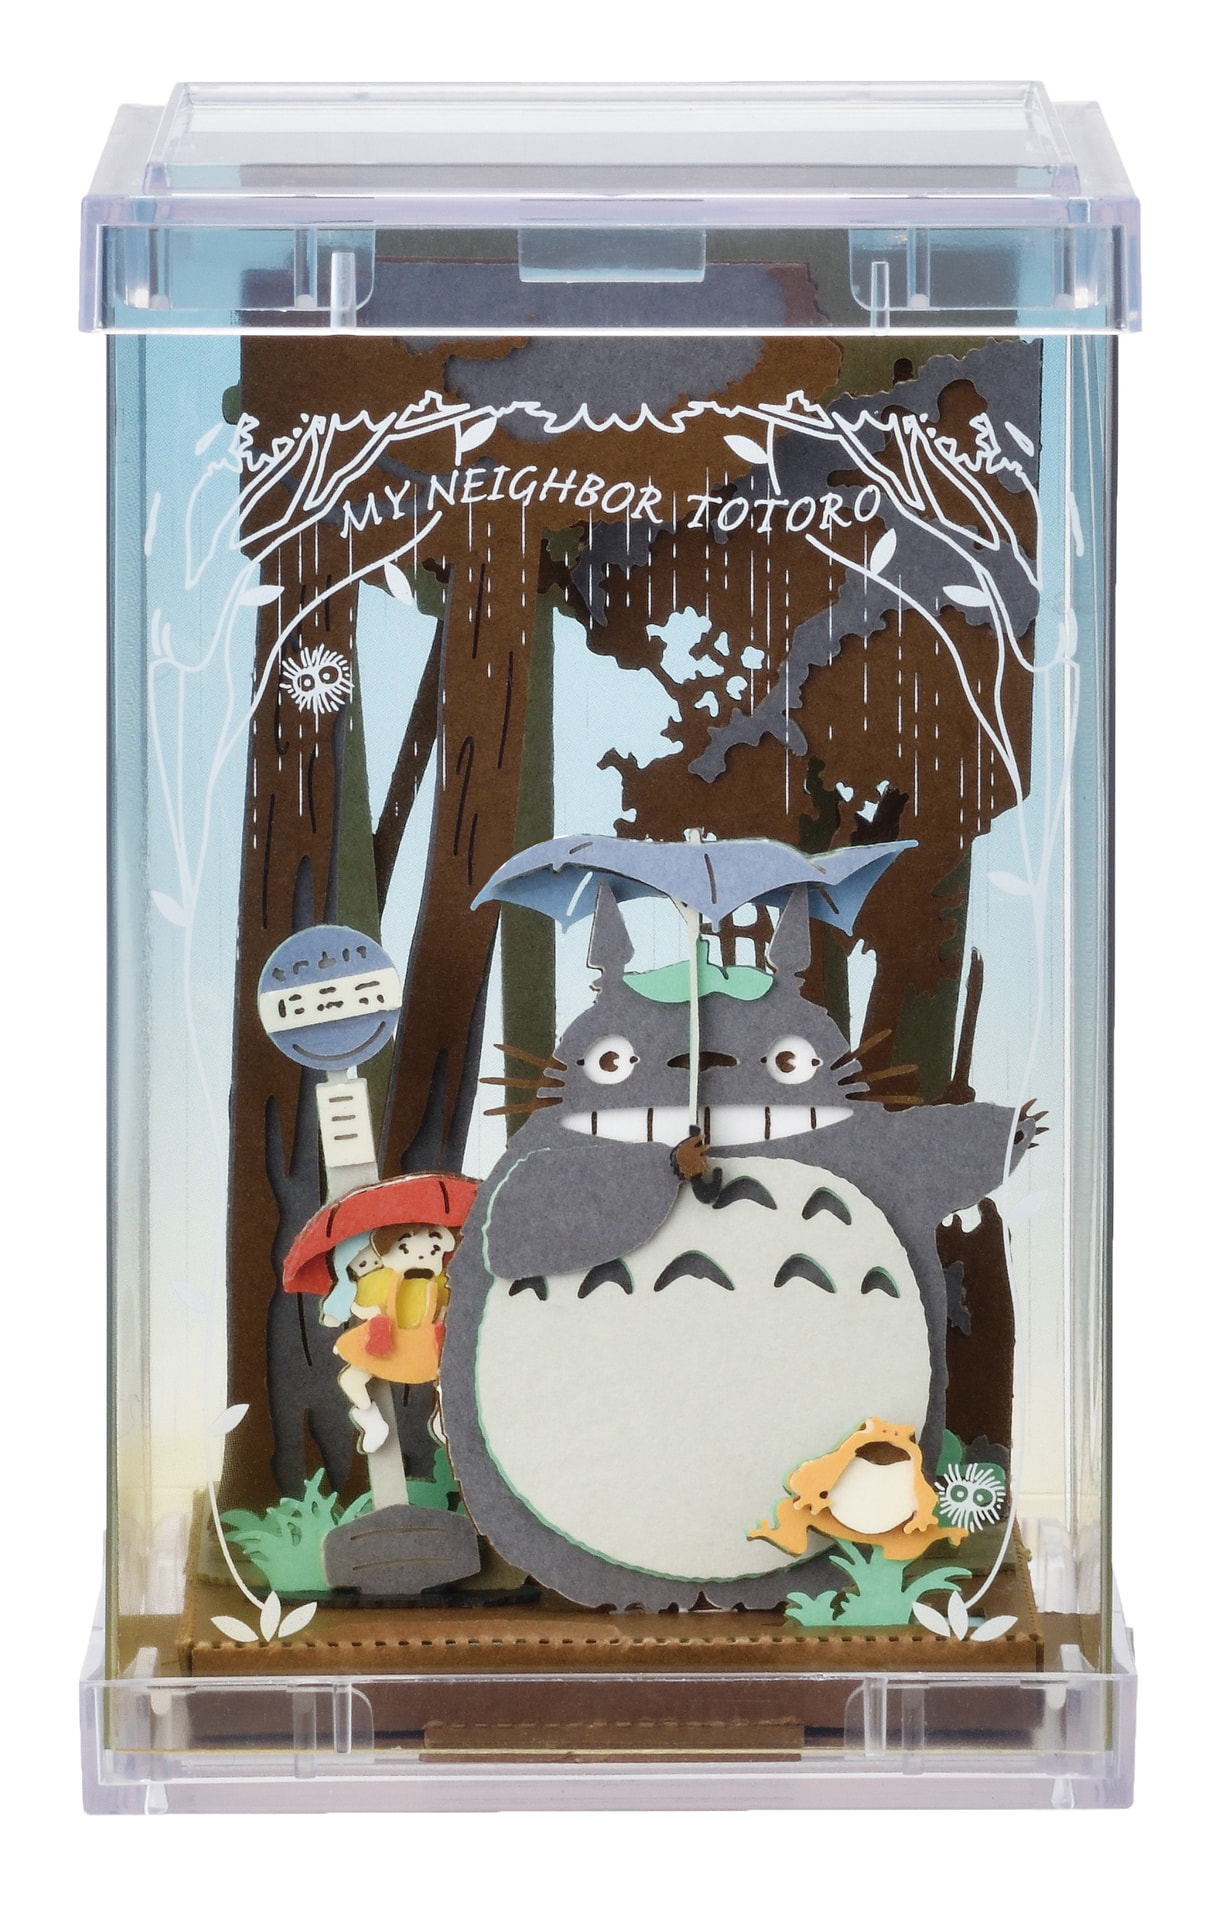 となりのトトロ PAPER THEATER -wood style- / My Neighbor Totoro PT 